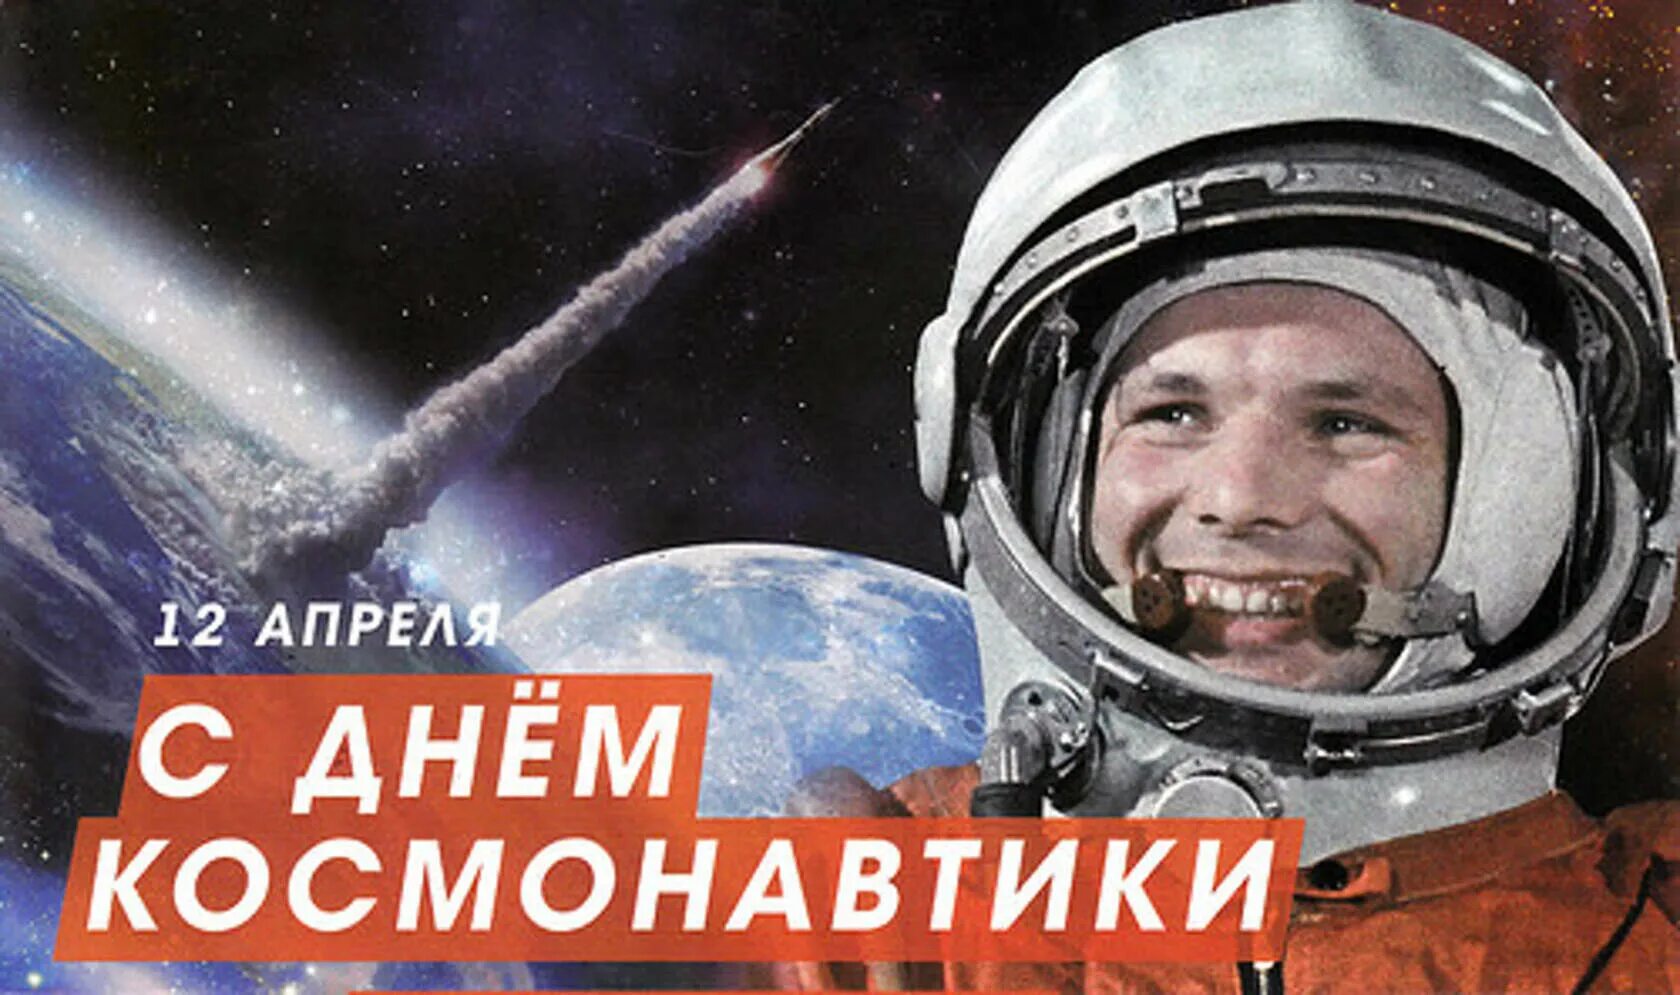 Какой праздник 12 апреля в россии. День космонавтики. 12 Апреля день космонавтики. День. 12 Апреяс днём космонавтики.